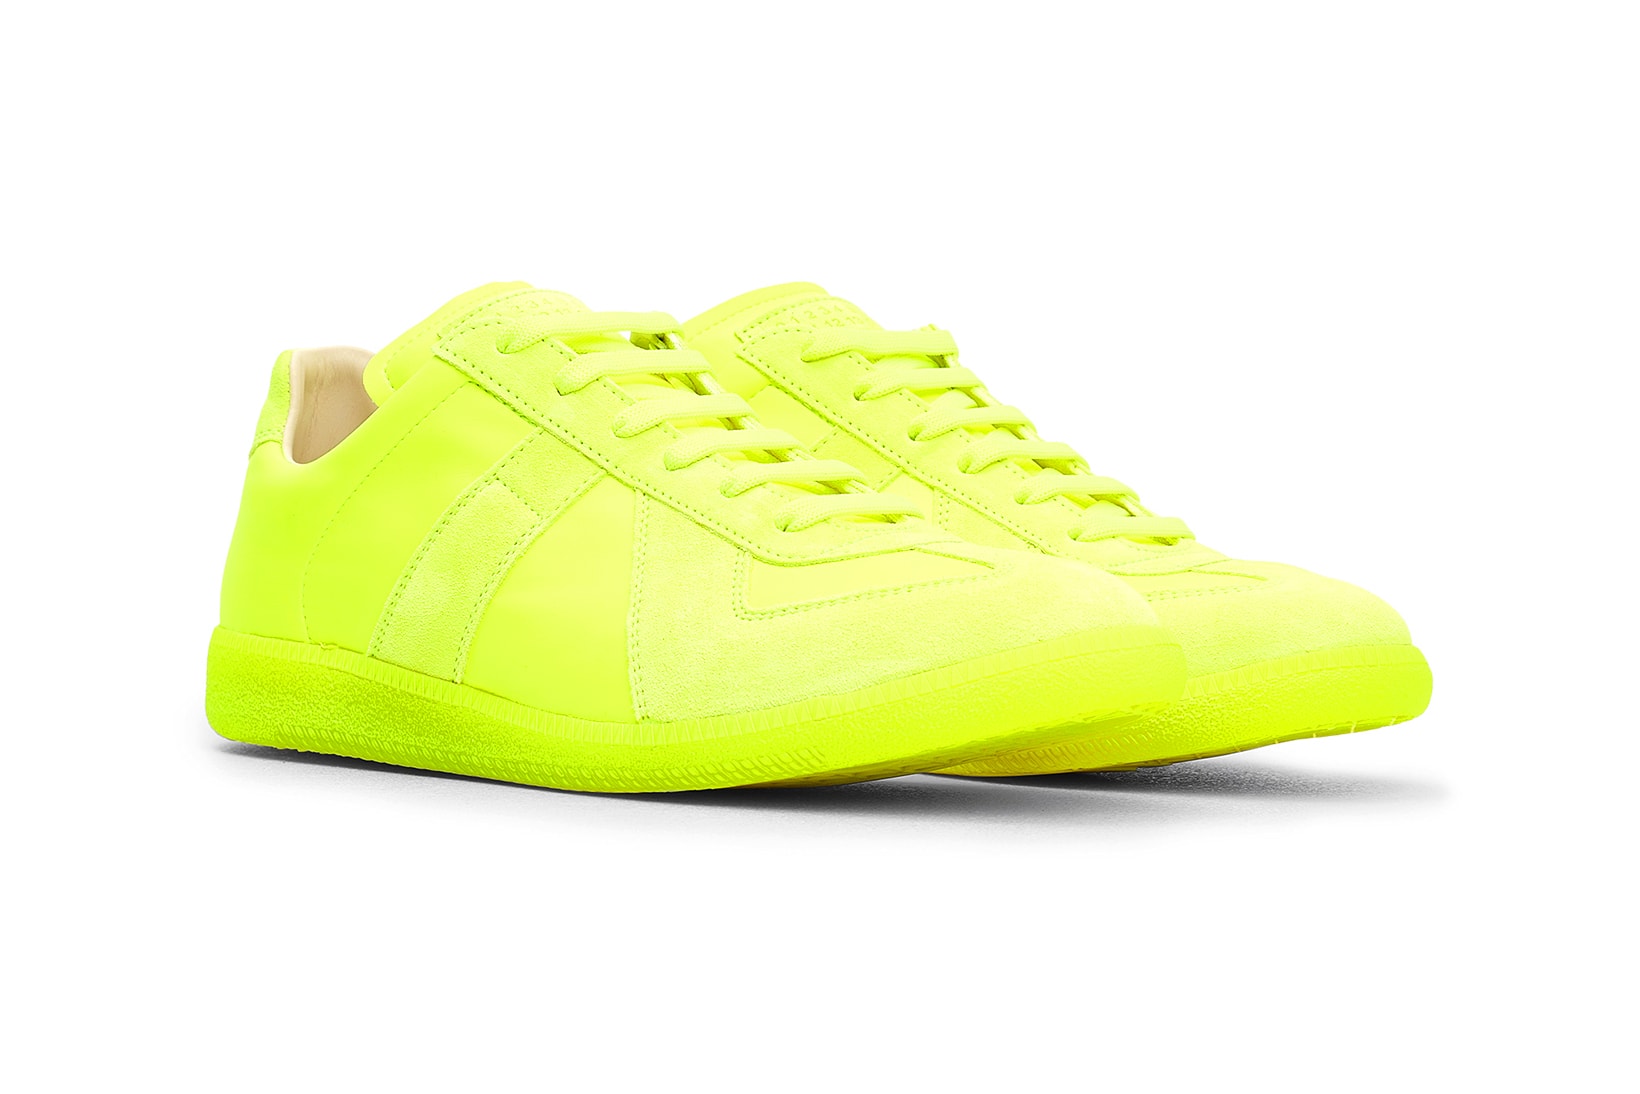 Maison Margiela Replica Sneaker Neon Yellow Colorway Release Information Details Buy Cop Tres Bien Sweden Online Web Store Retailer